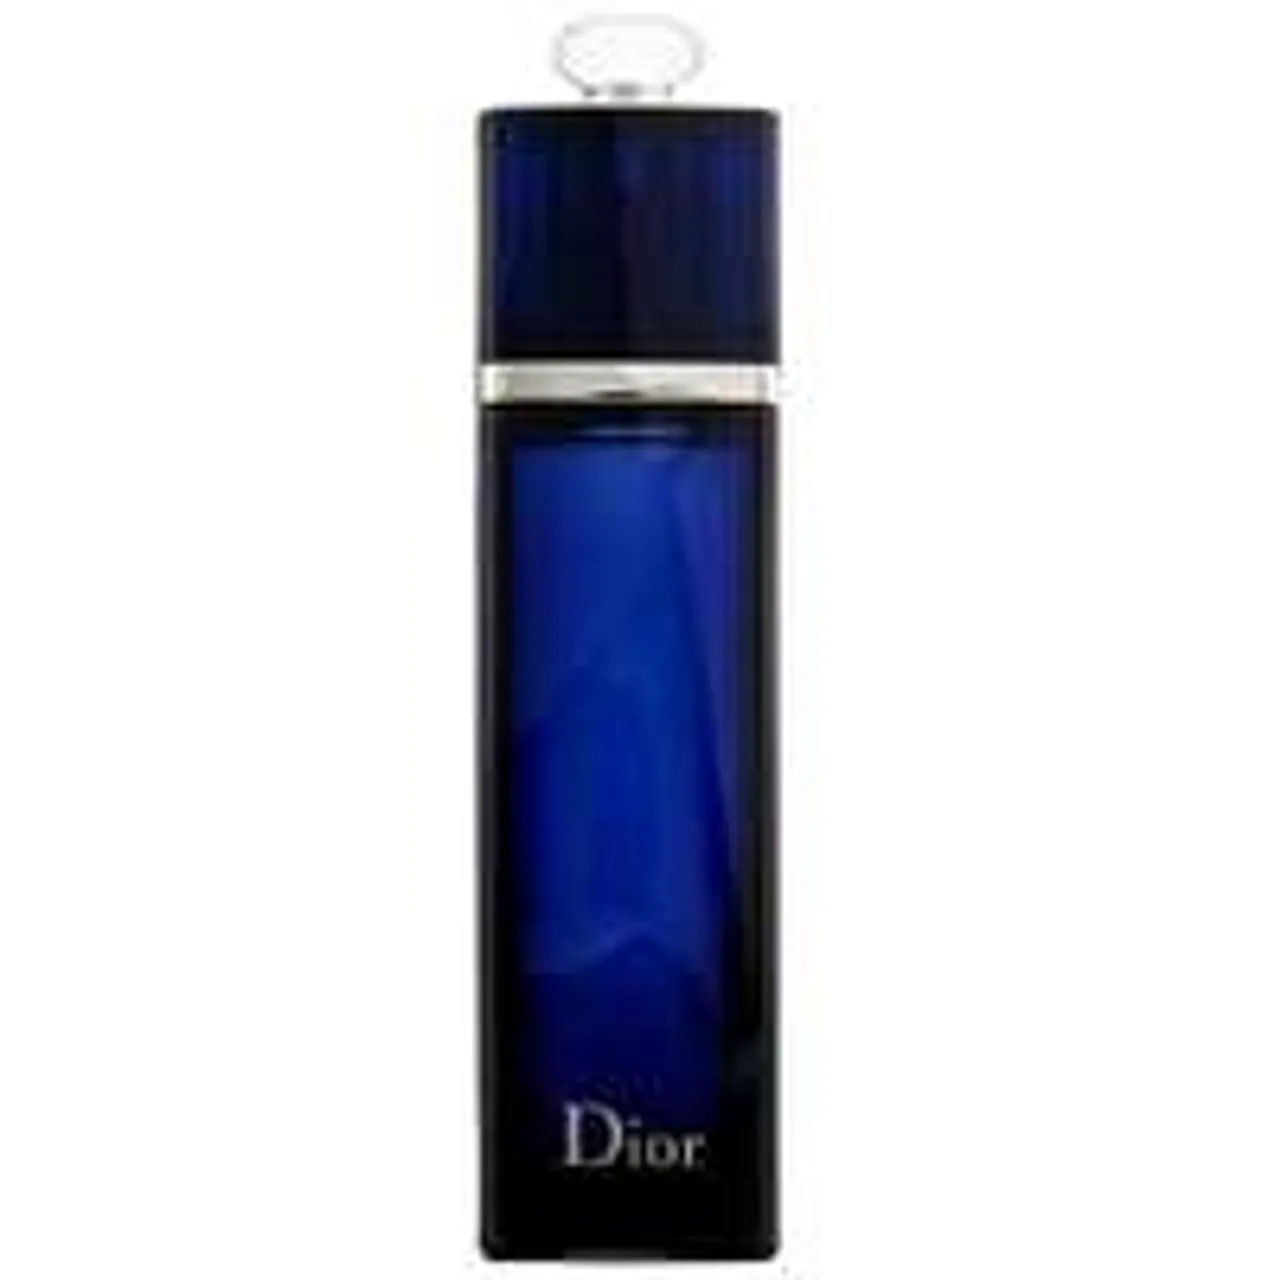 Dior Addict Eau de Parfum Spray 100ml